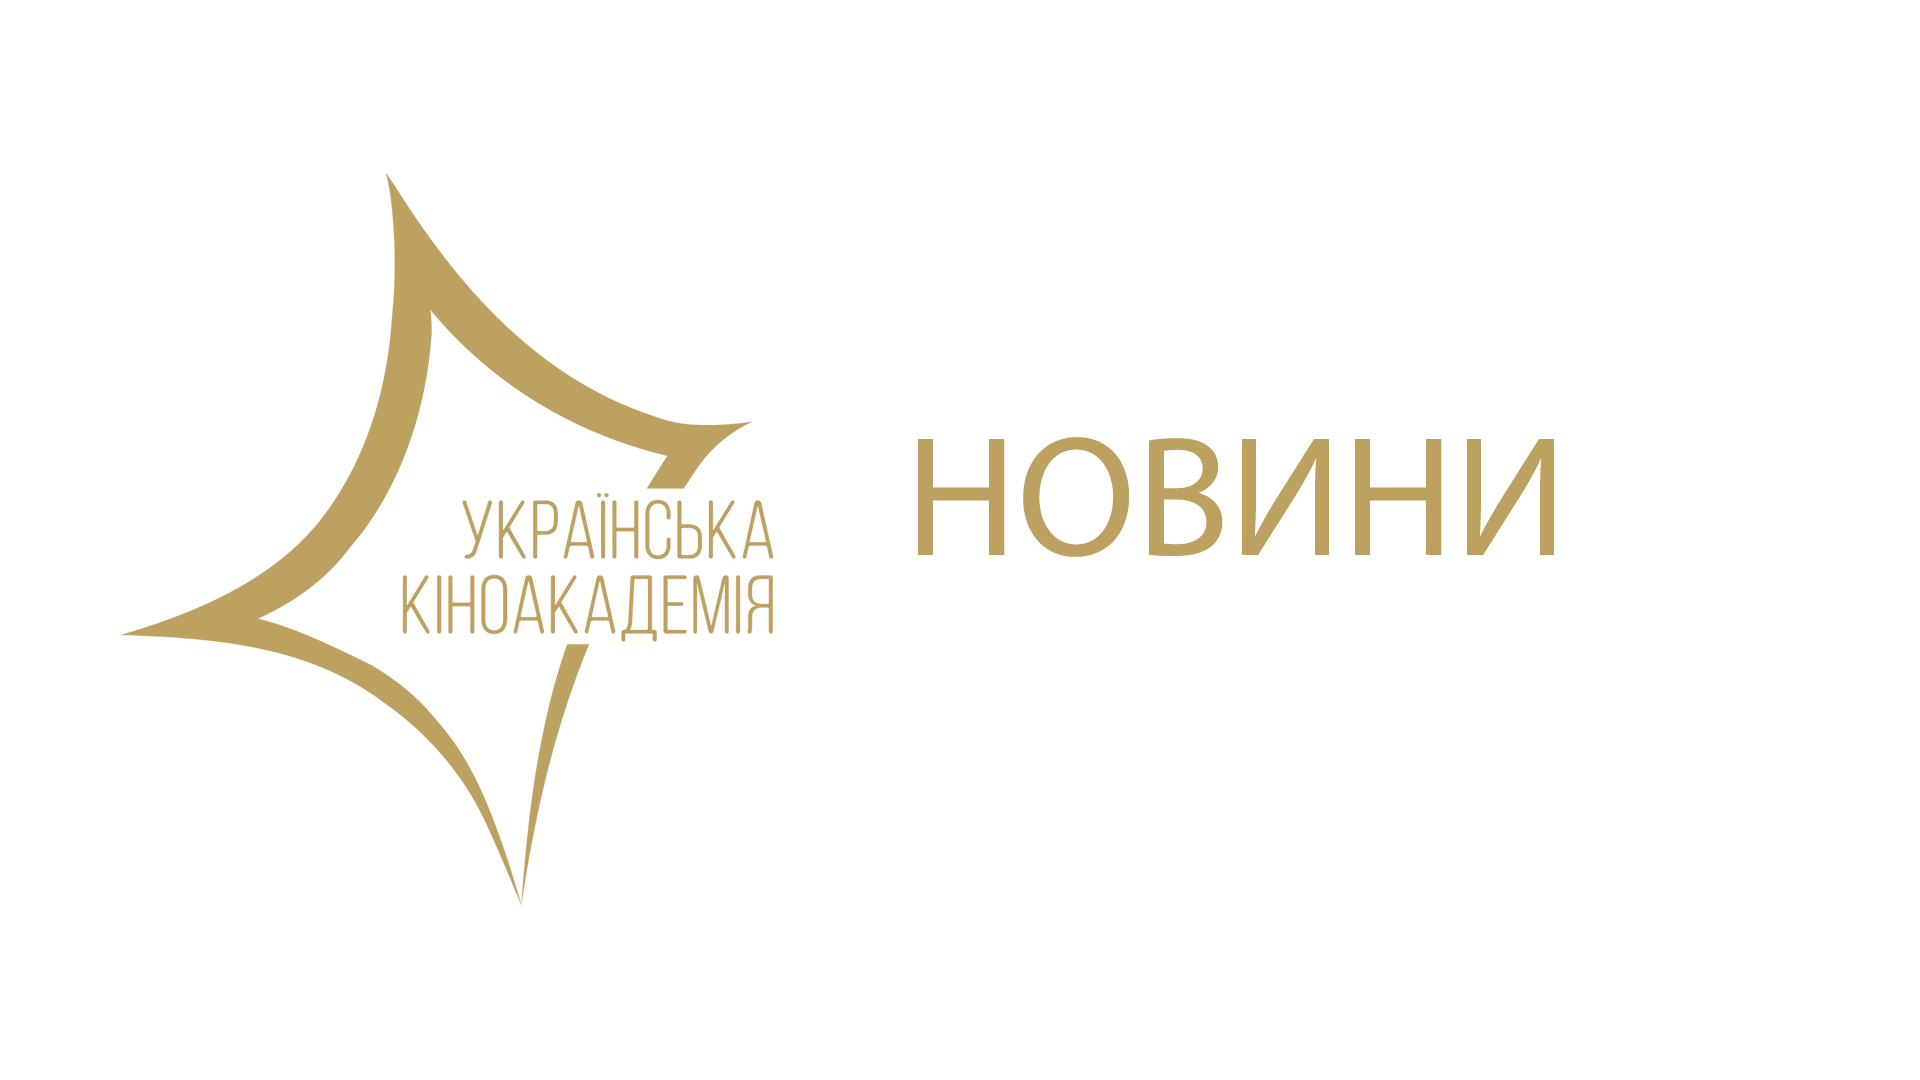 З 5-го до 19-го жовтня триватиме онлайн-голосування за кандидатів на сайті Української кіноакадемії, під час якого кіноакадеміки 12 членів Правління та 2 змінних члена Наглядової Ради